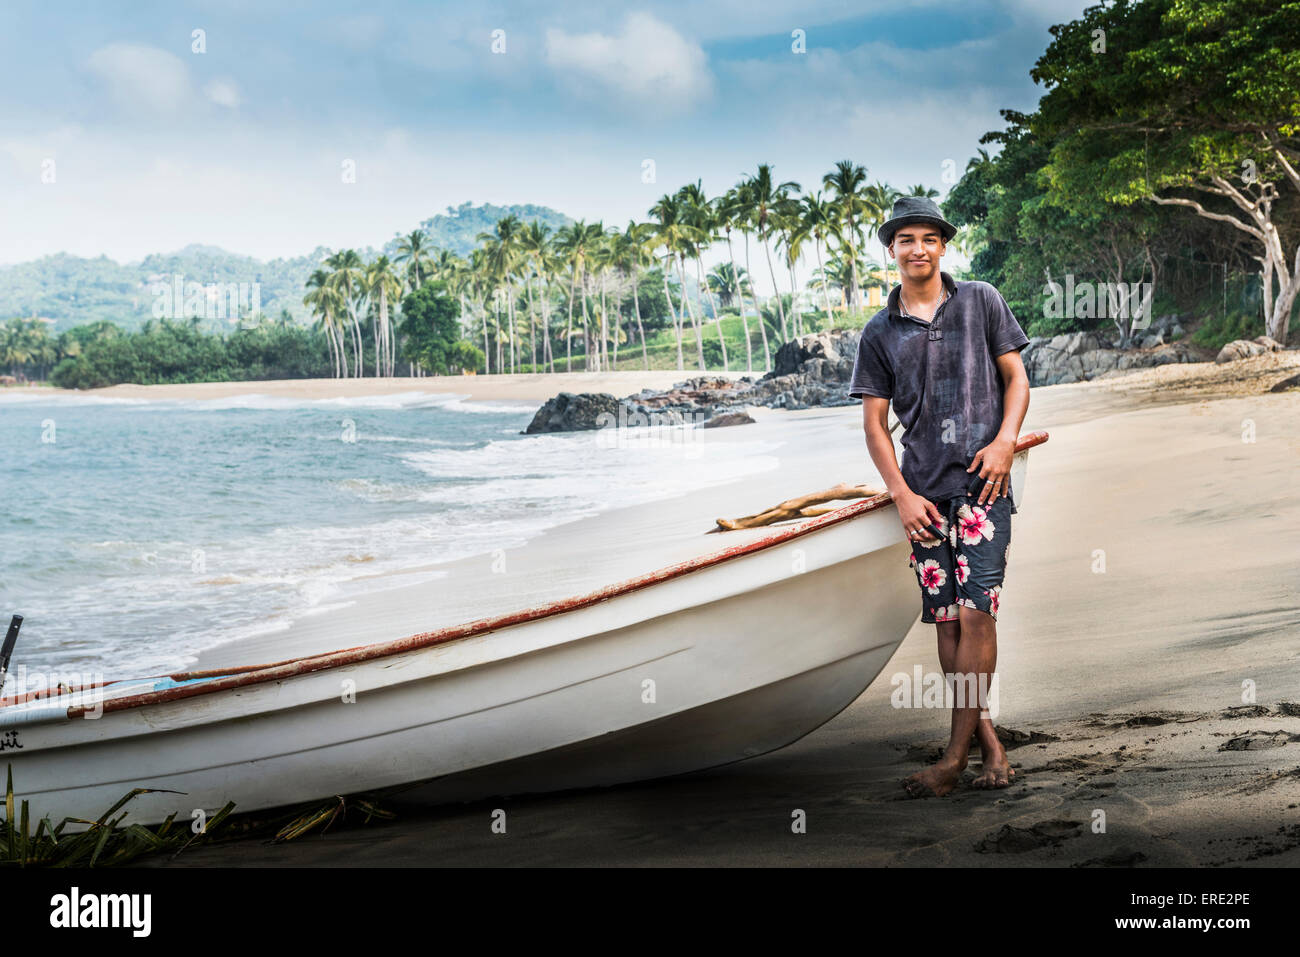 Hispanic man standing près de boat on beach Banque D'Images